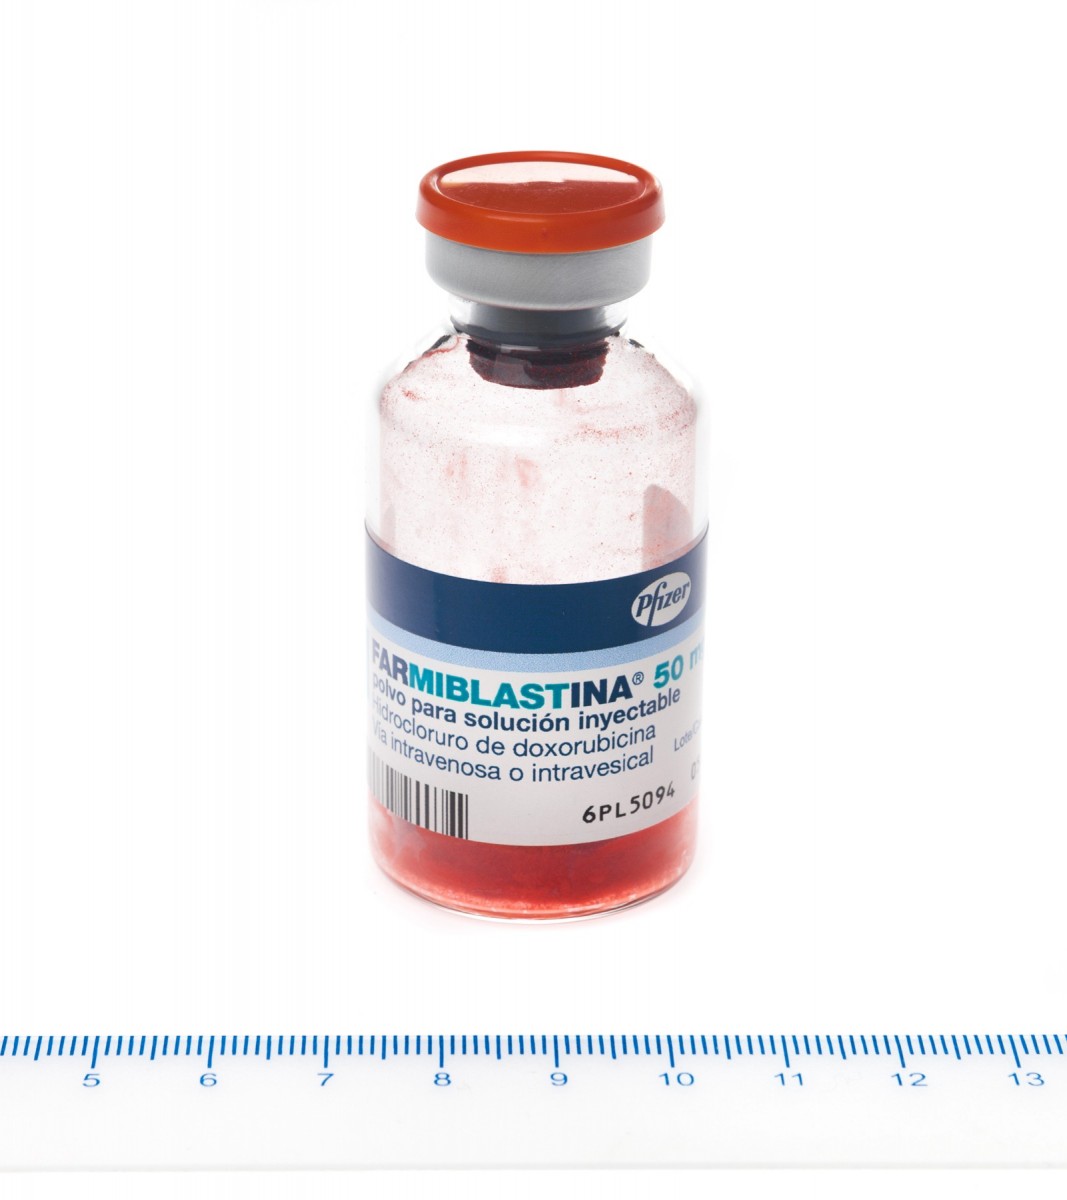 FARMIBLASTINA 50 mg POLVO PARA SOLUCION INYECTABLE, 25 viales fotografía de la forma farmacéutica.